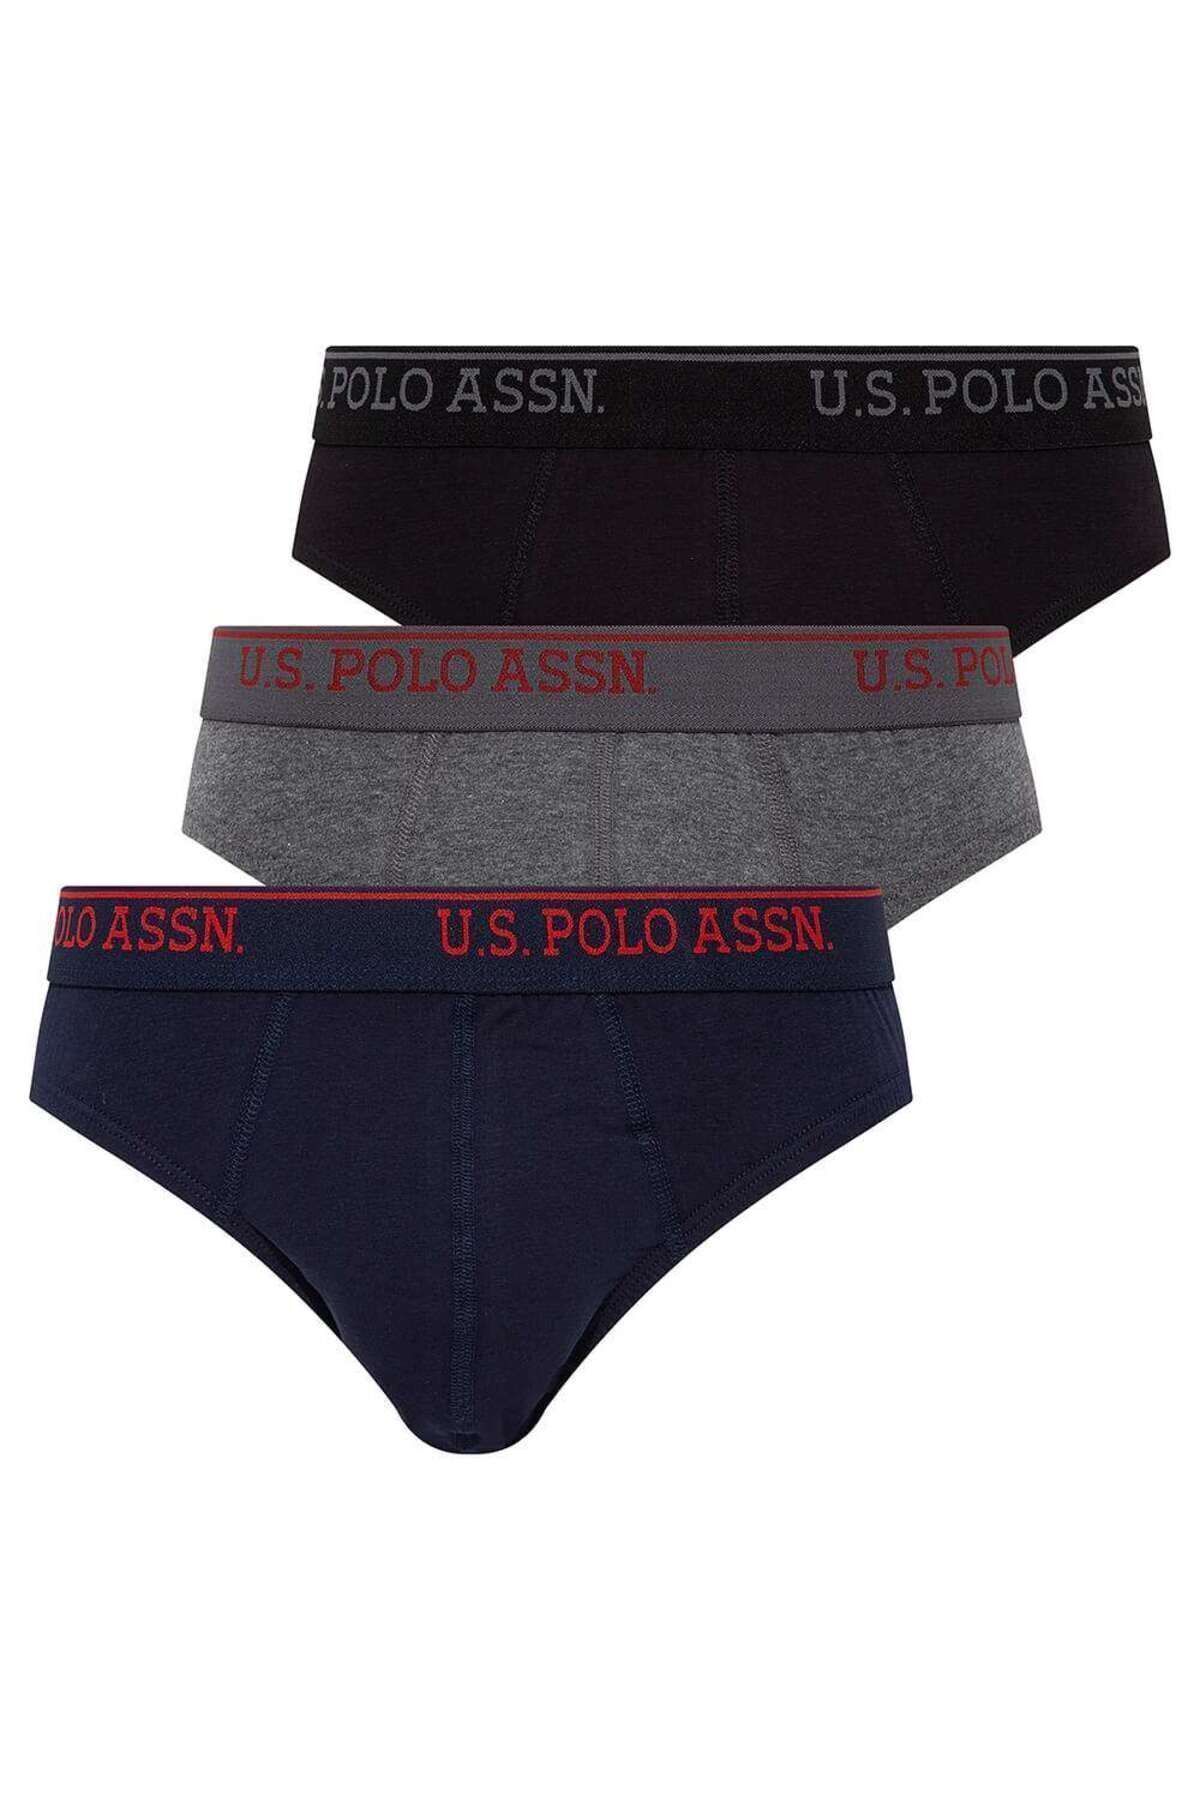 U.S. Polo Assn. Erkek Siyah - Antrasit Melanj - Lacivert 3 Lü Slip 80436